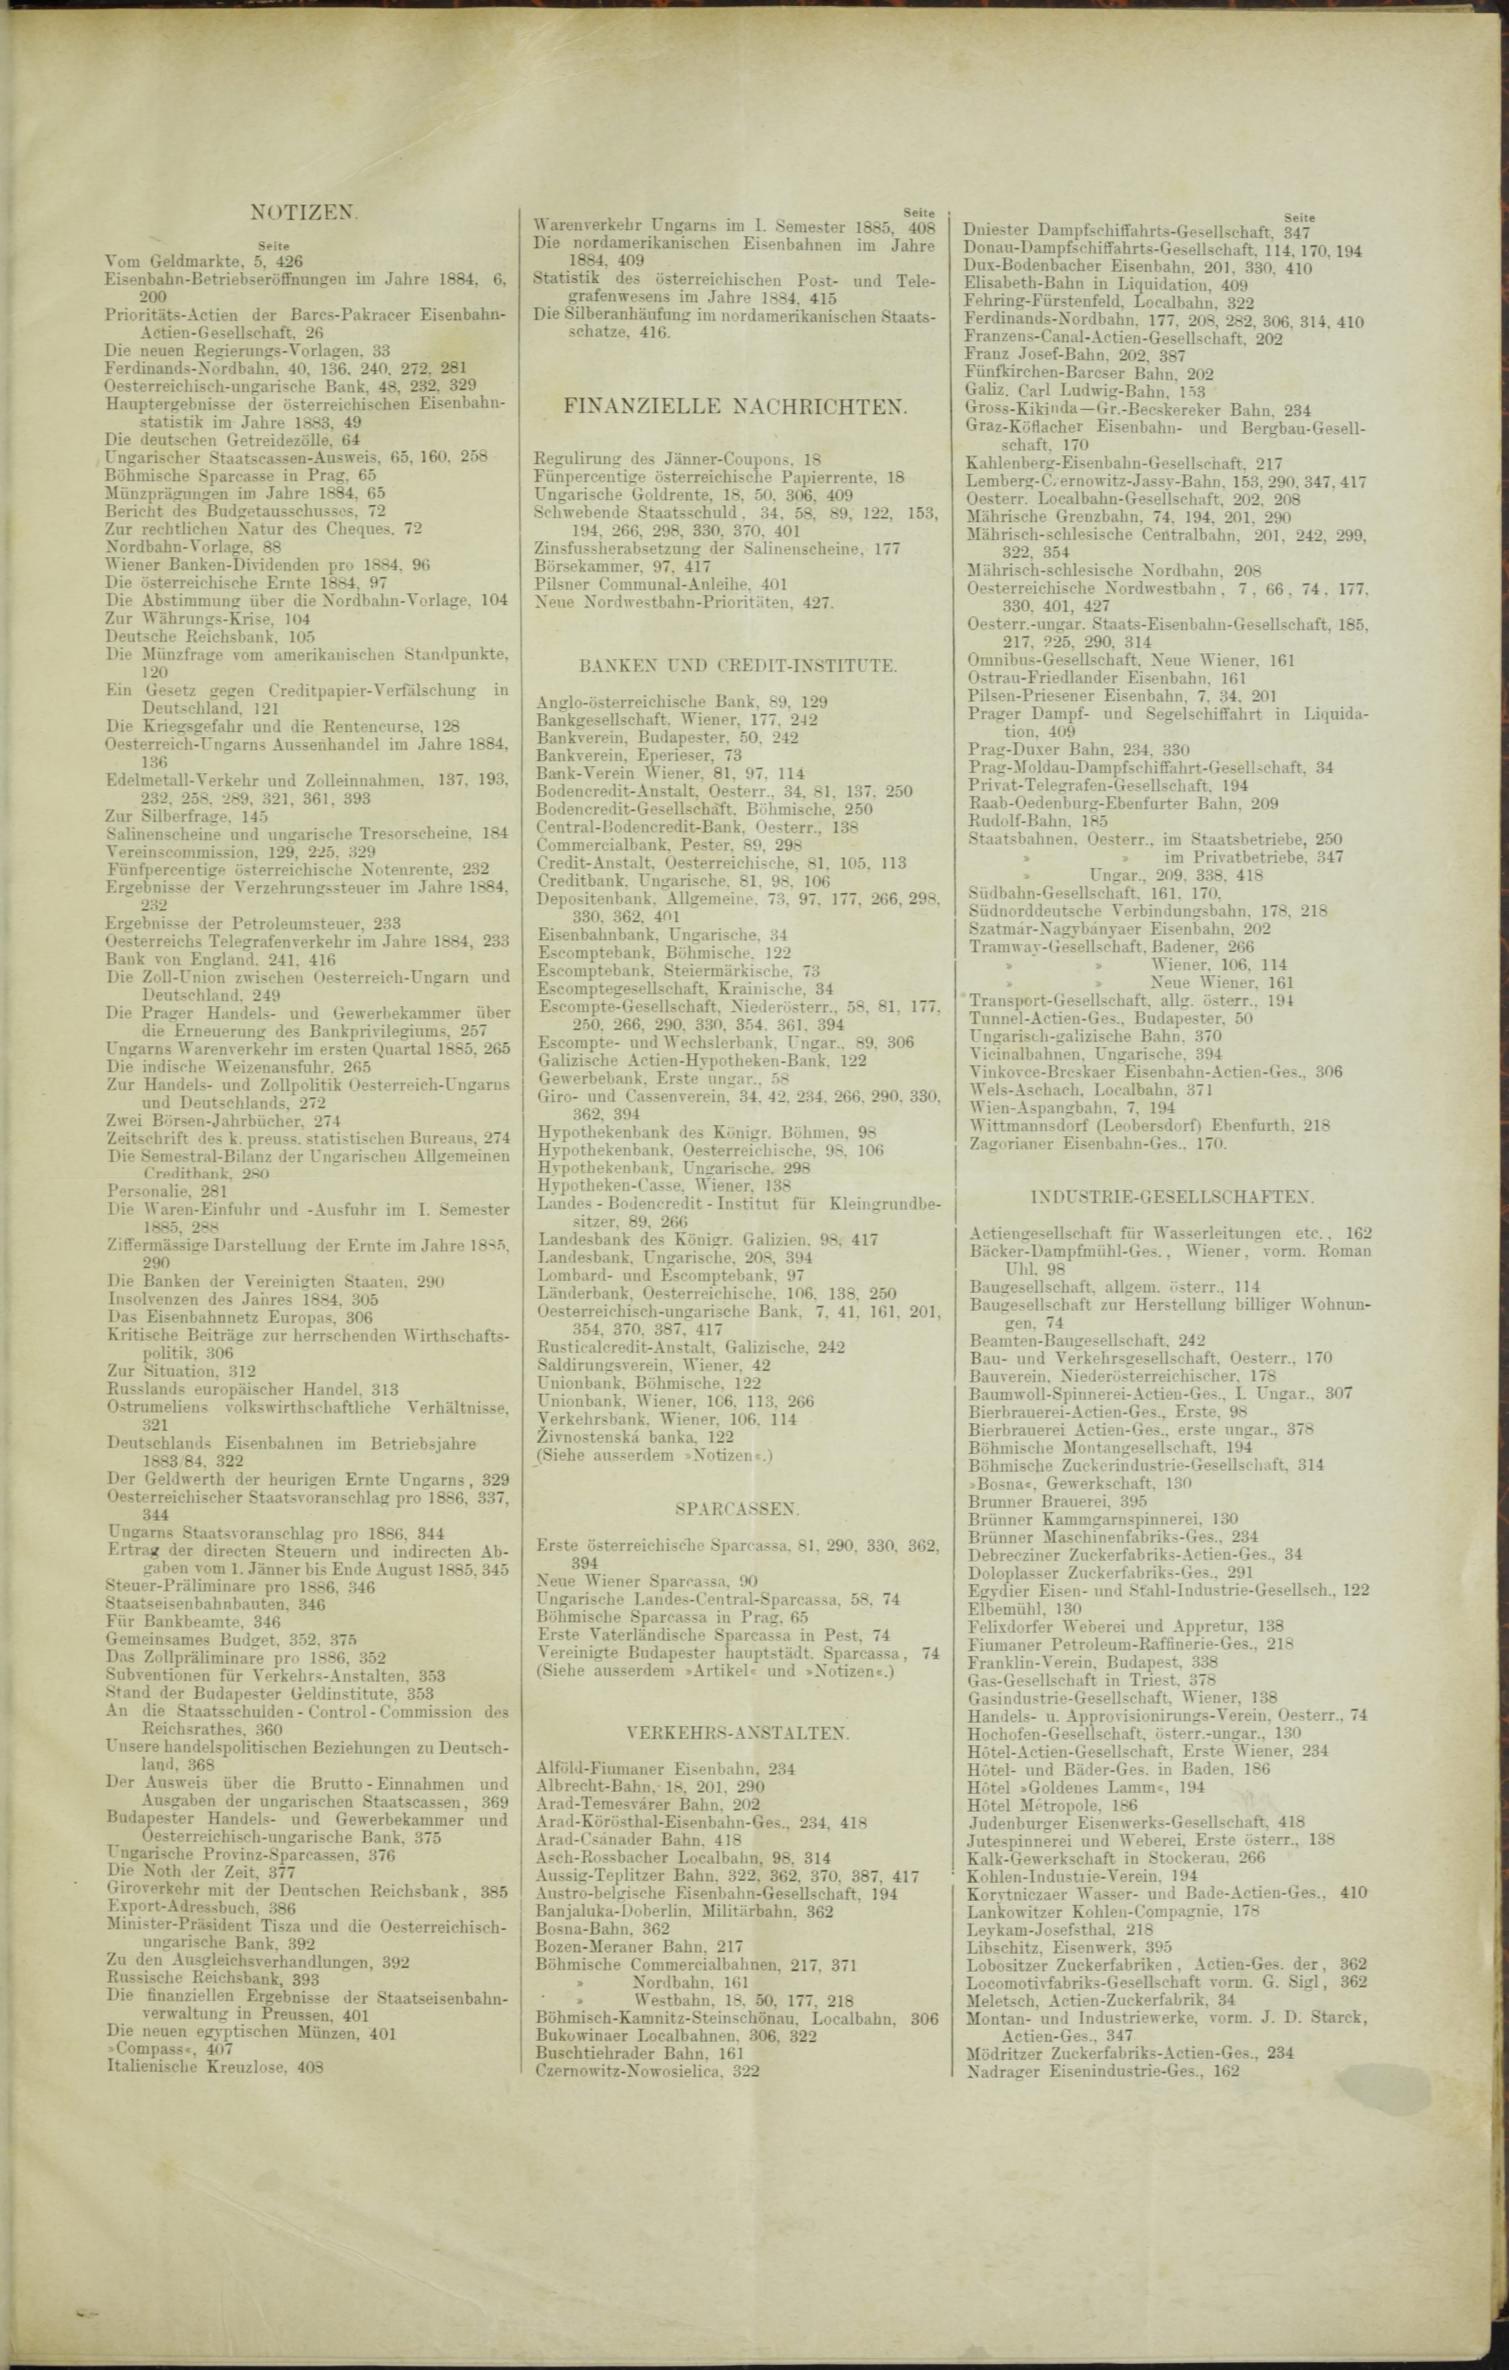 Der Tresor 05.11.1885 - Seite 11